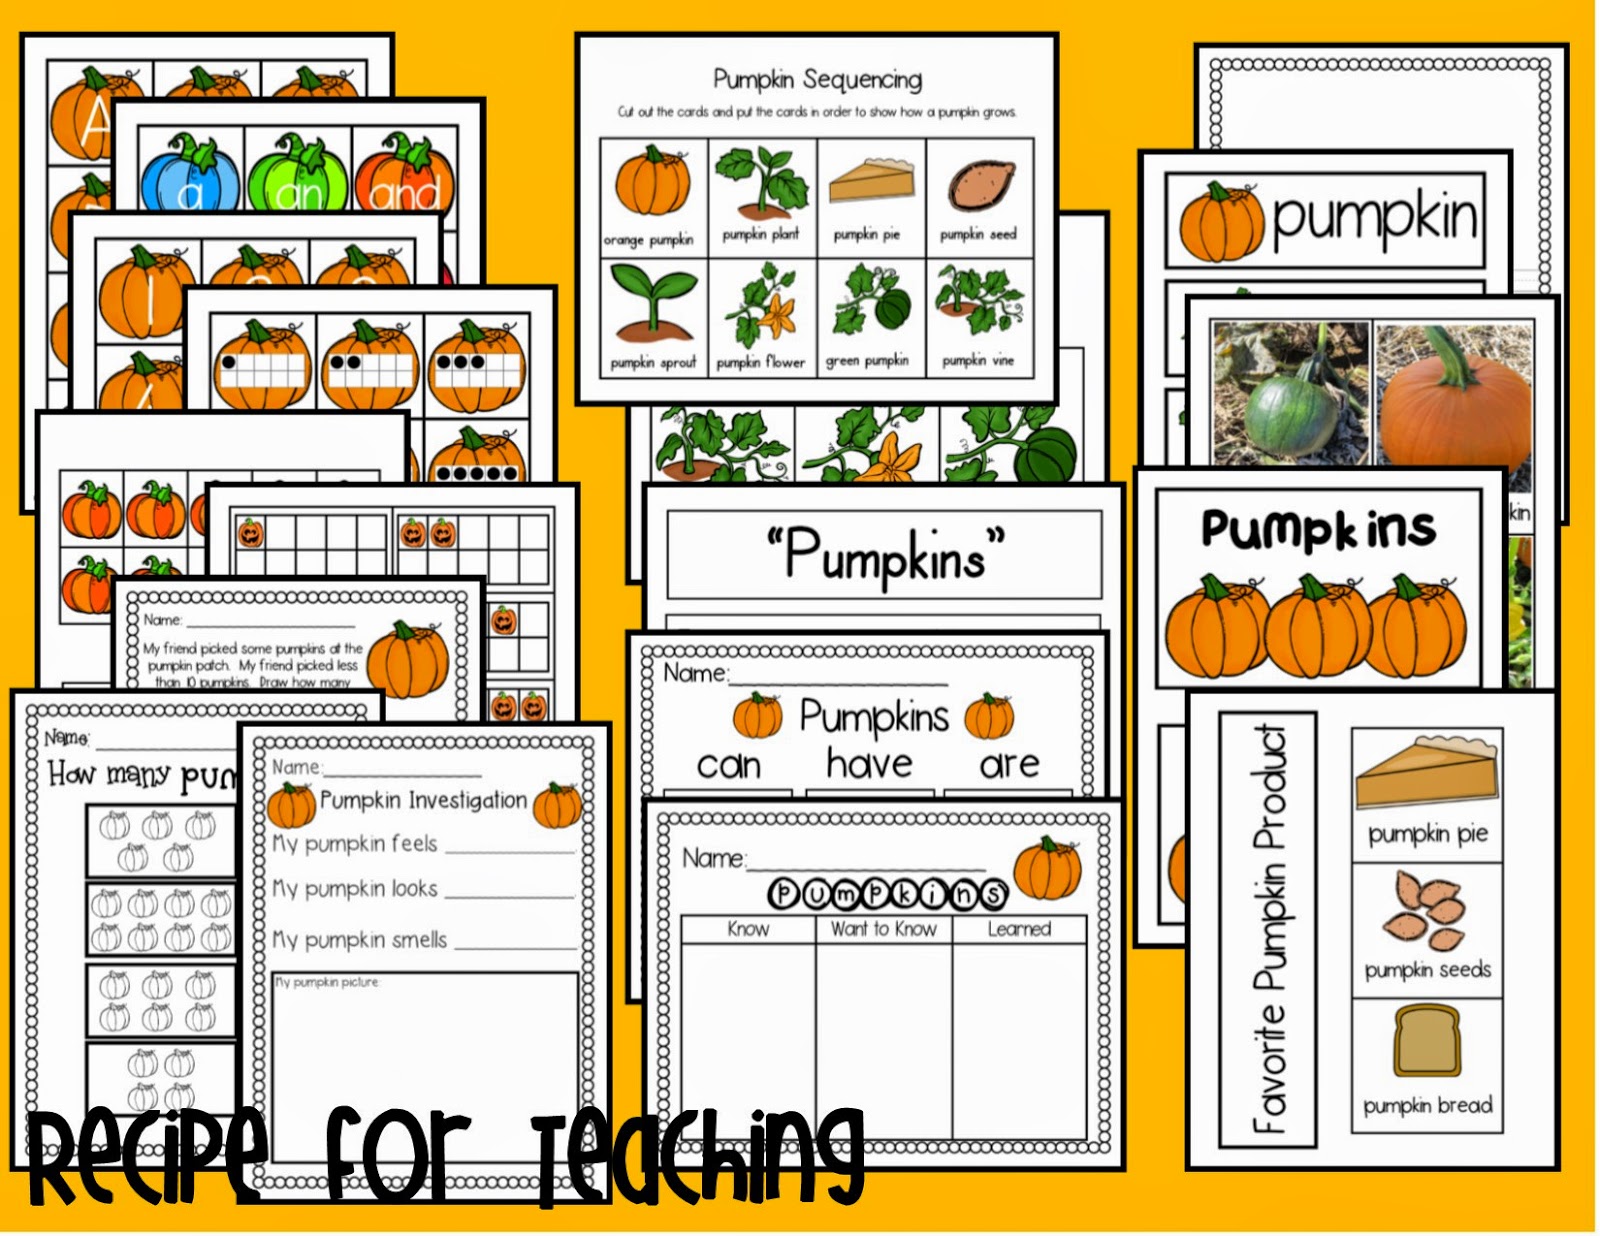 http://www.teacherspayteachers.com/Product/Pumpkin-Activities-1465895